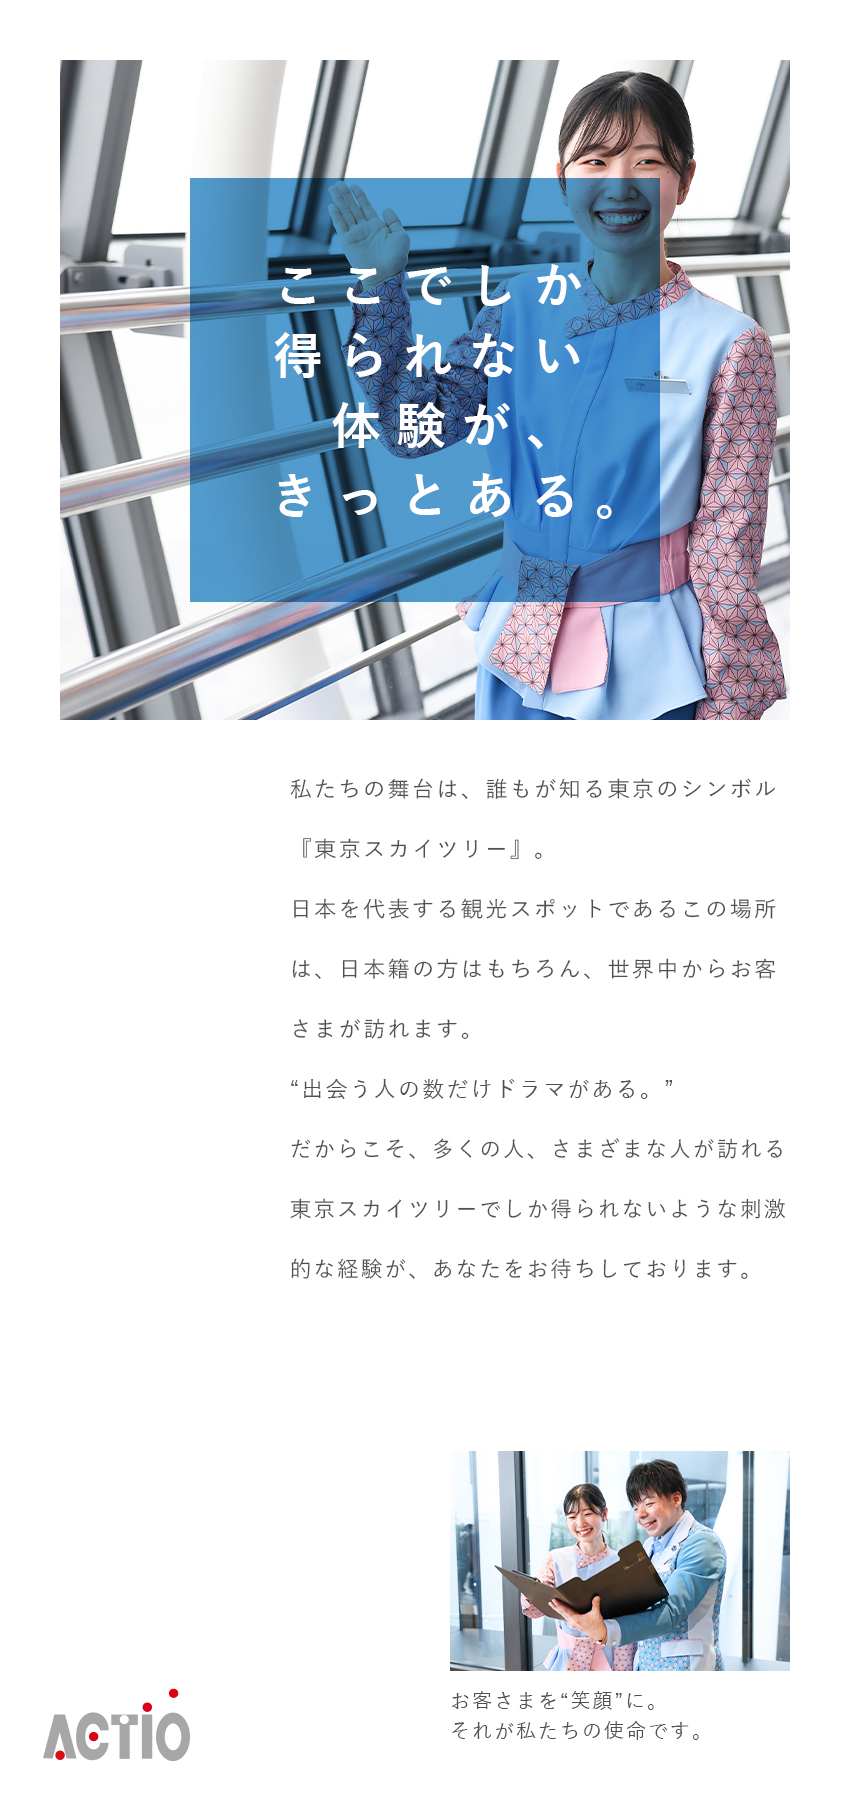 アクティオ株式会社 東京スカイツリー（R）で世界一のおもてなし！展望台の運営業務